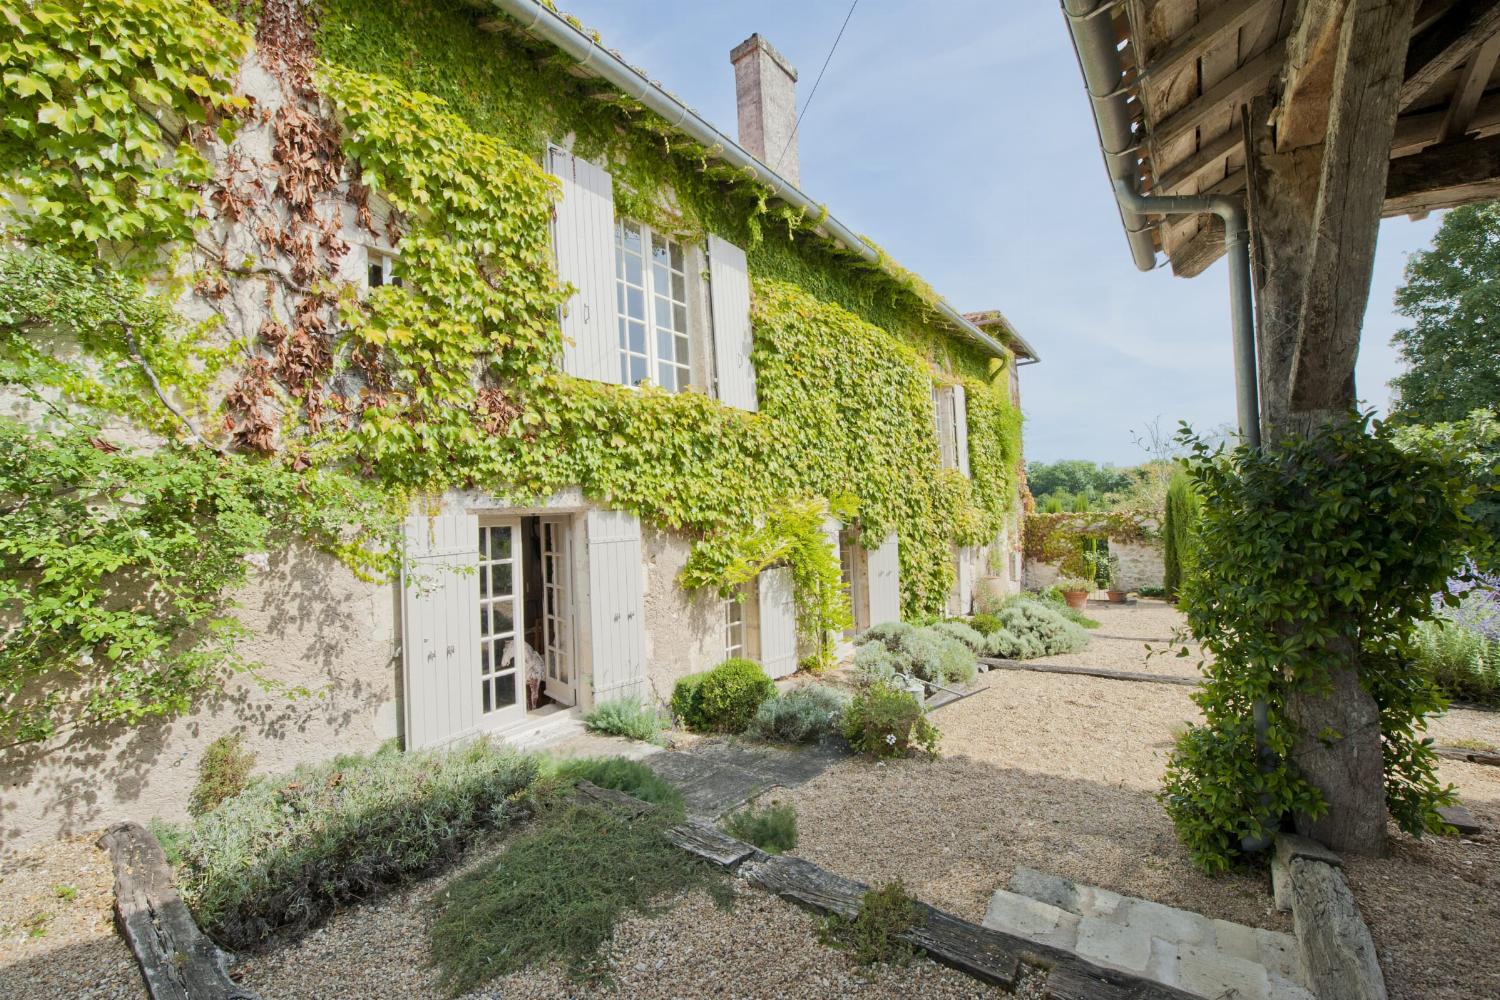 Rental home in Dordogne